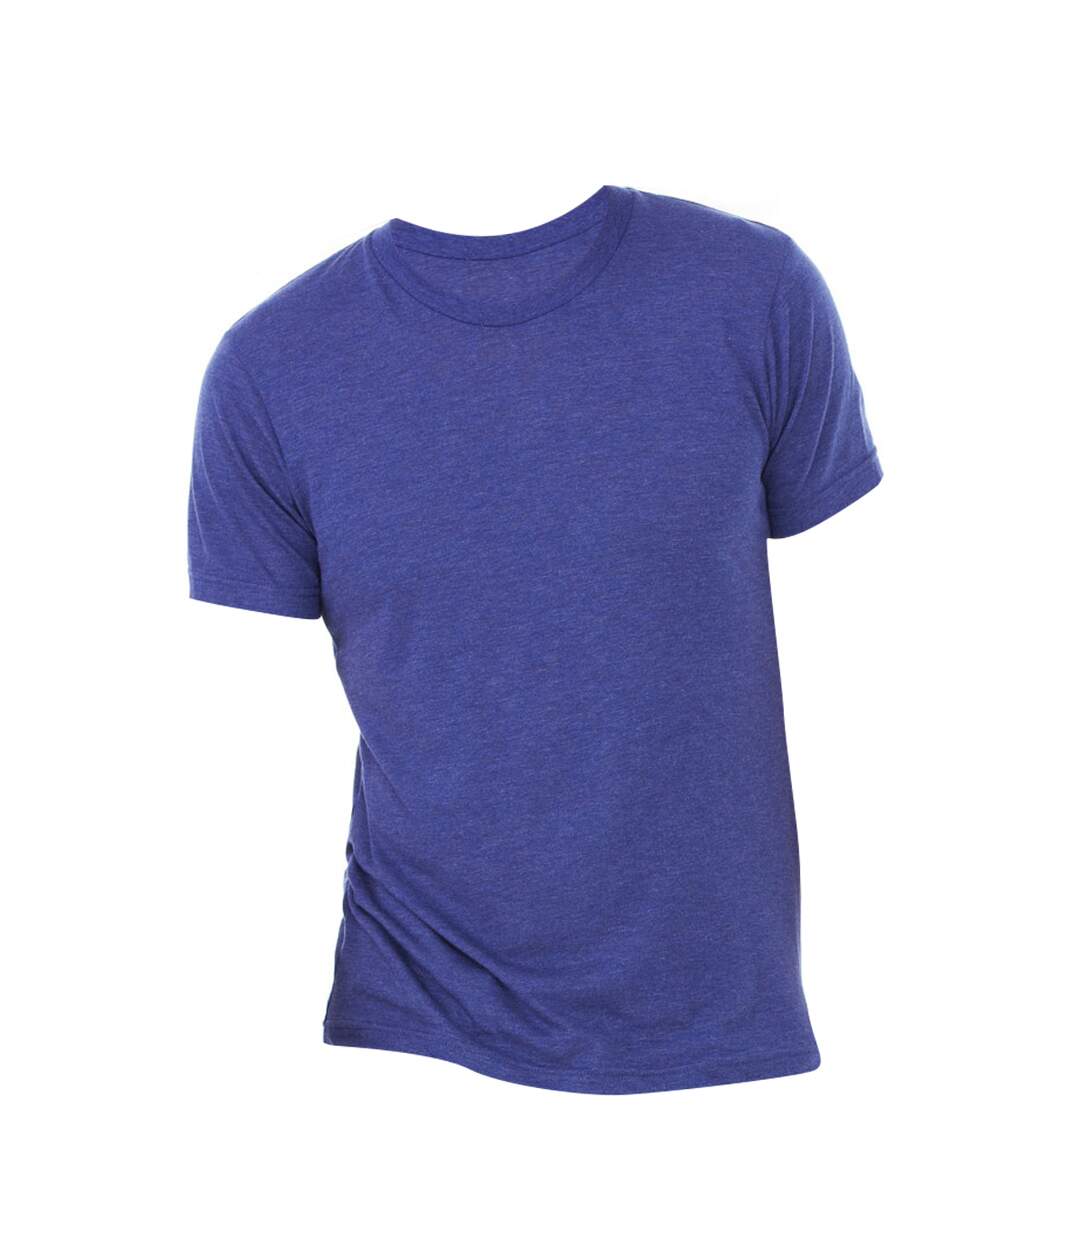 Canvas - T-shirt à manches courtes - Homme (Bleu marine) - UTBC2596